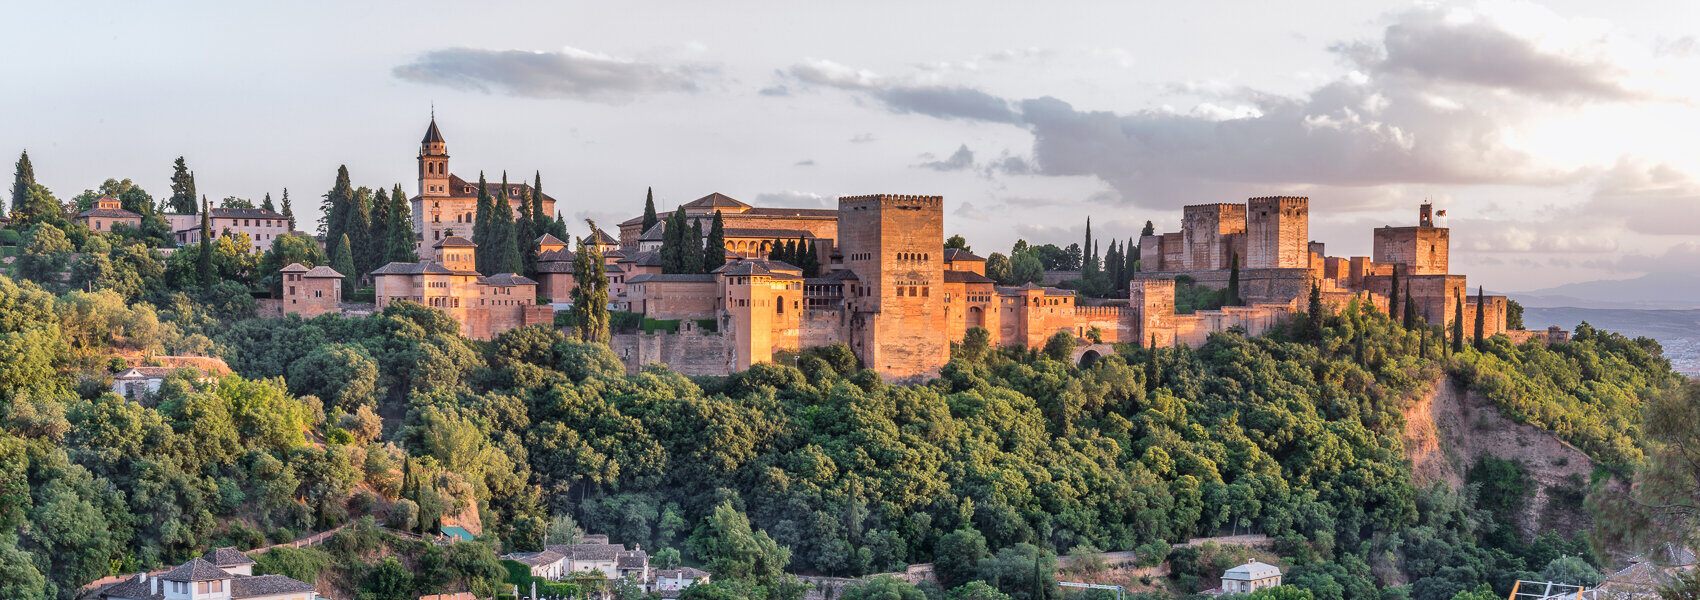 Visiter l'Alhambra